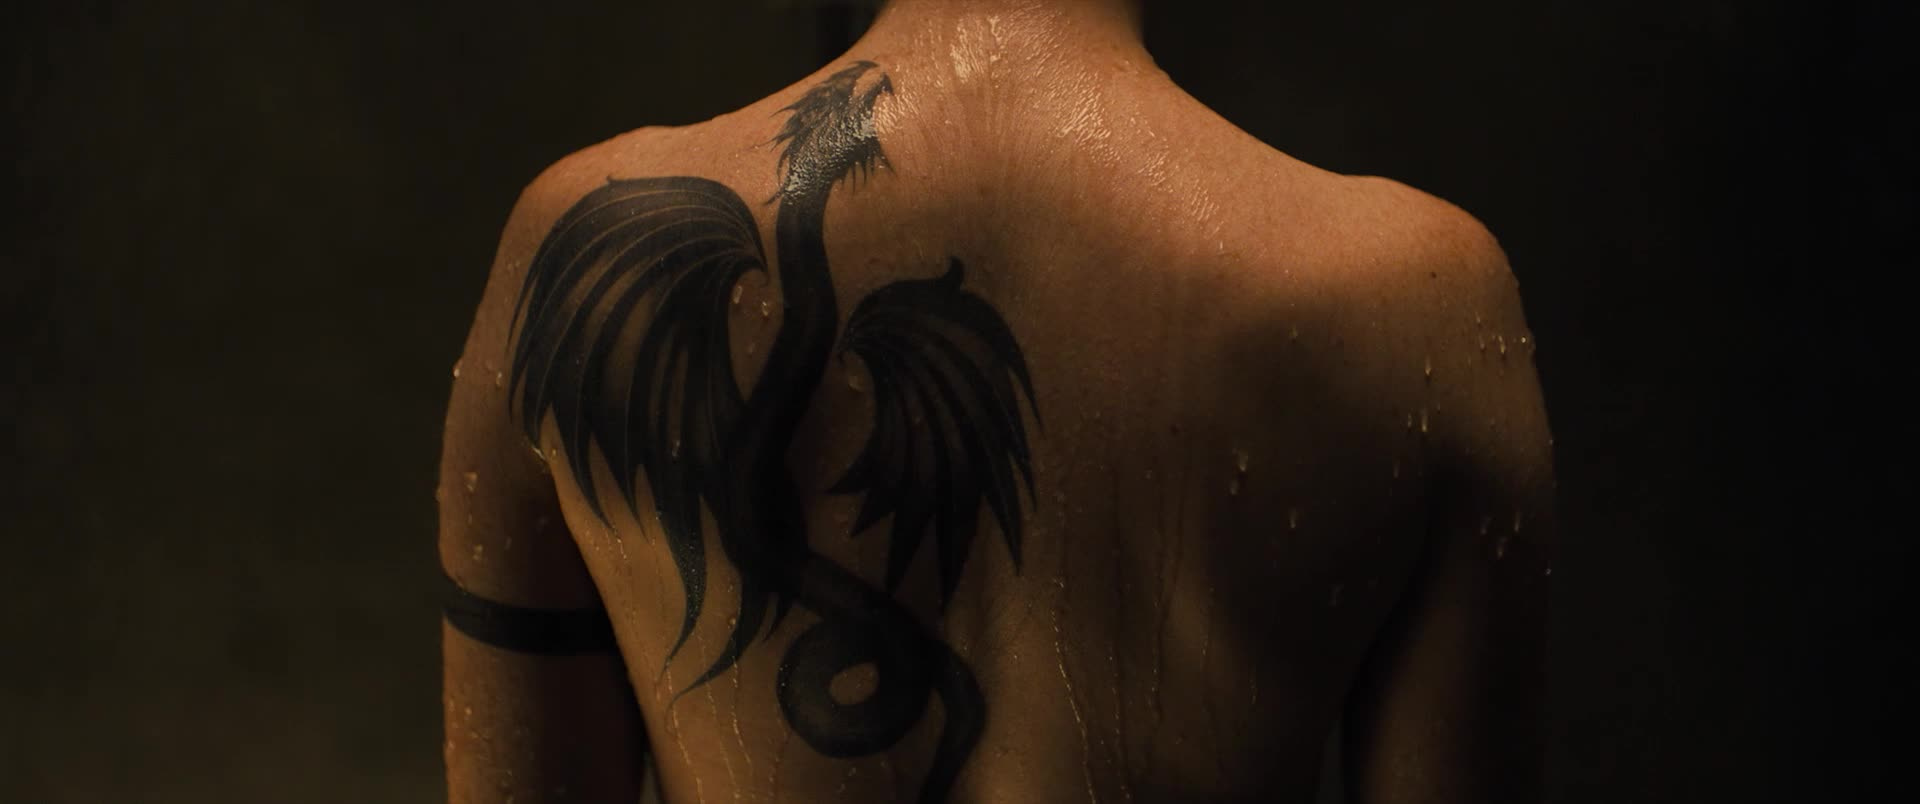 Клэр Фой девушка с татуировкой дракона